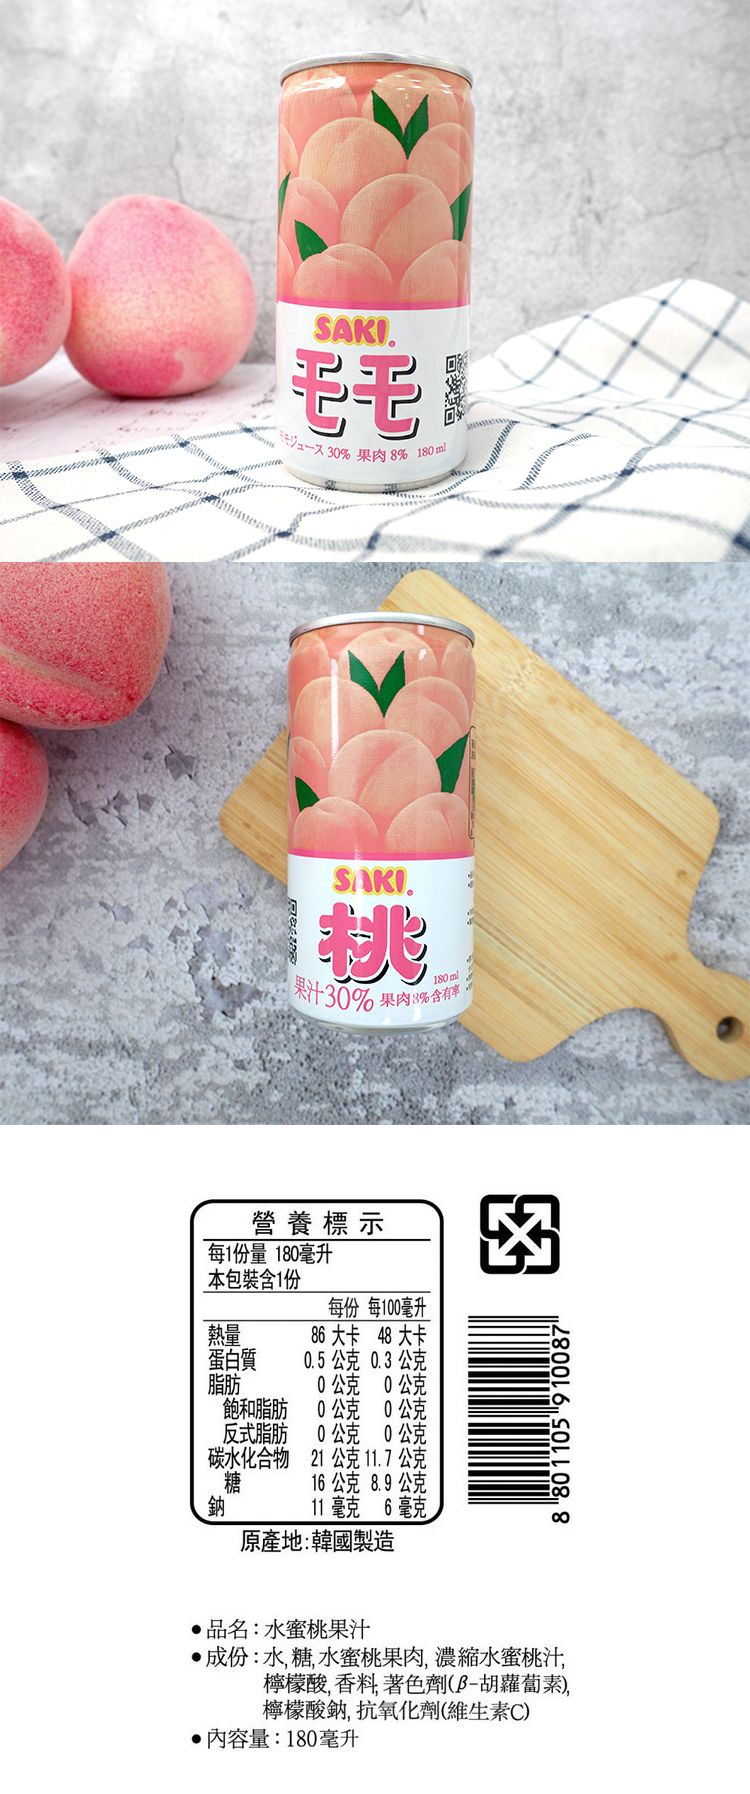 韓國 果汁 韓國 水蜜桃 水蜜桃 果汁